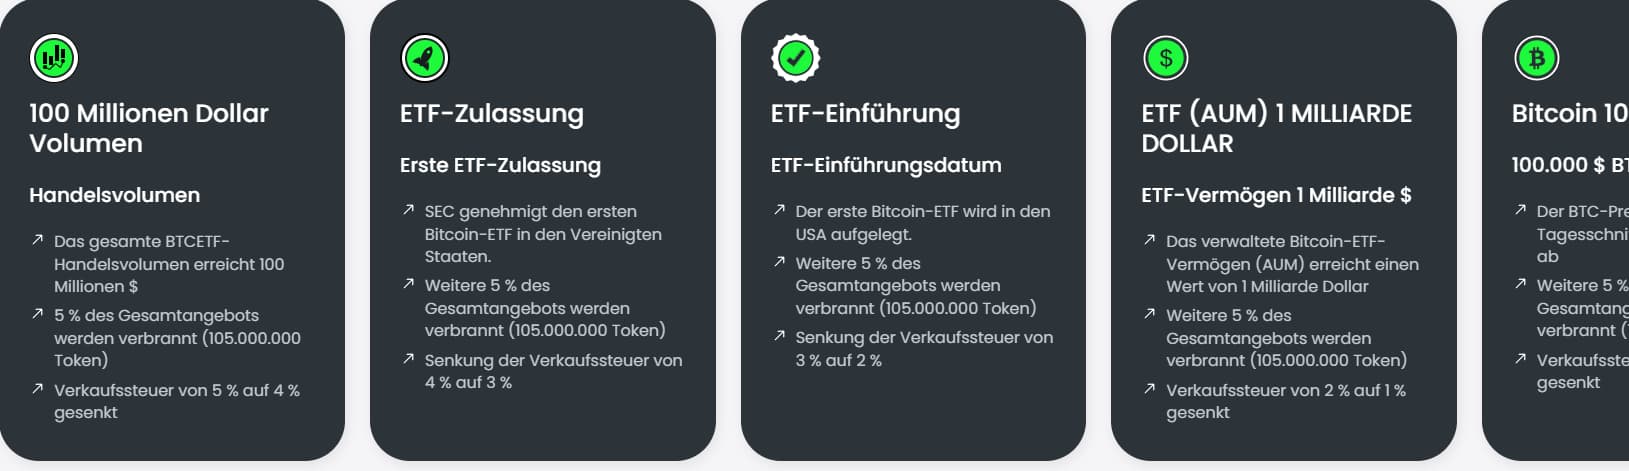 Zusammenfassung Bitcoin ETF